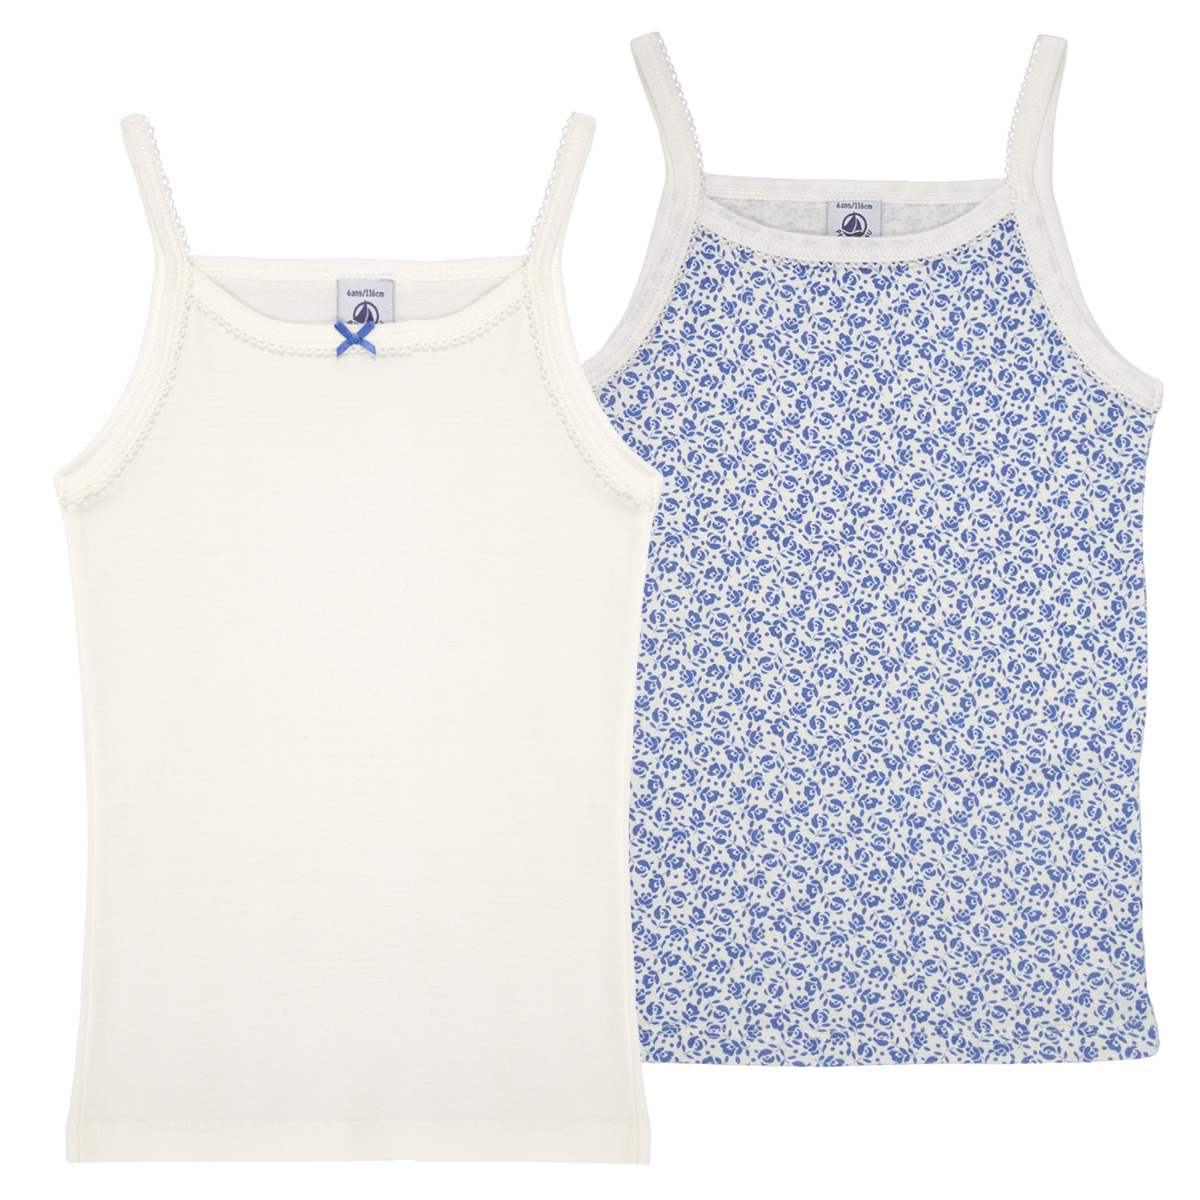 Vêtements Fille Débardeurs / T-shirts sans manche Petit Bateau A0A4D X2 Bleu / Blanc